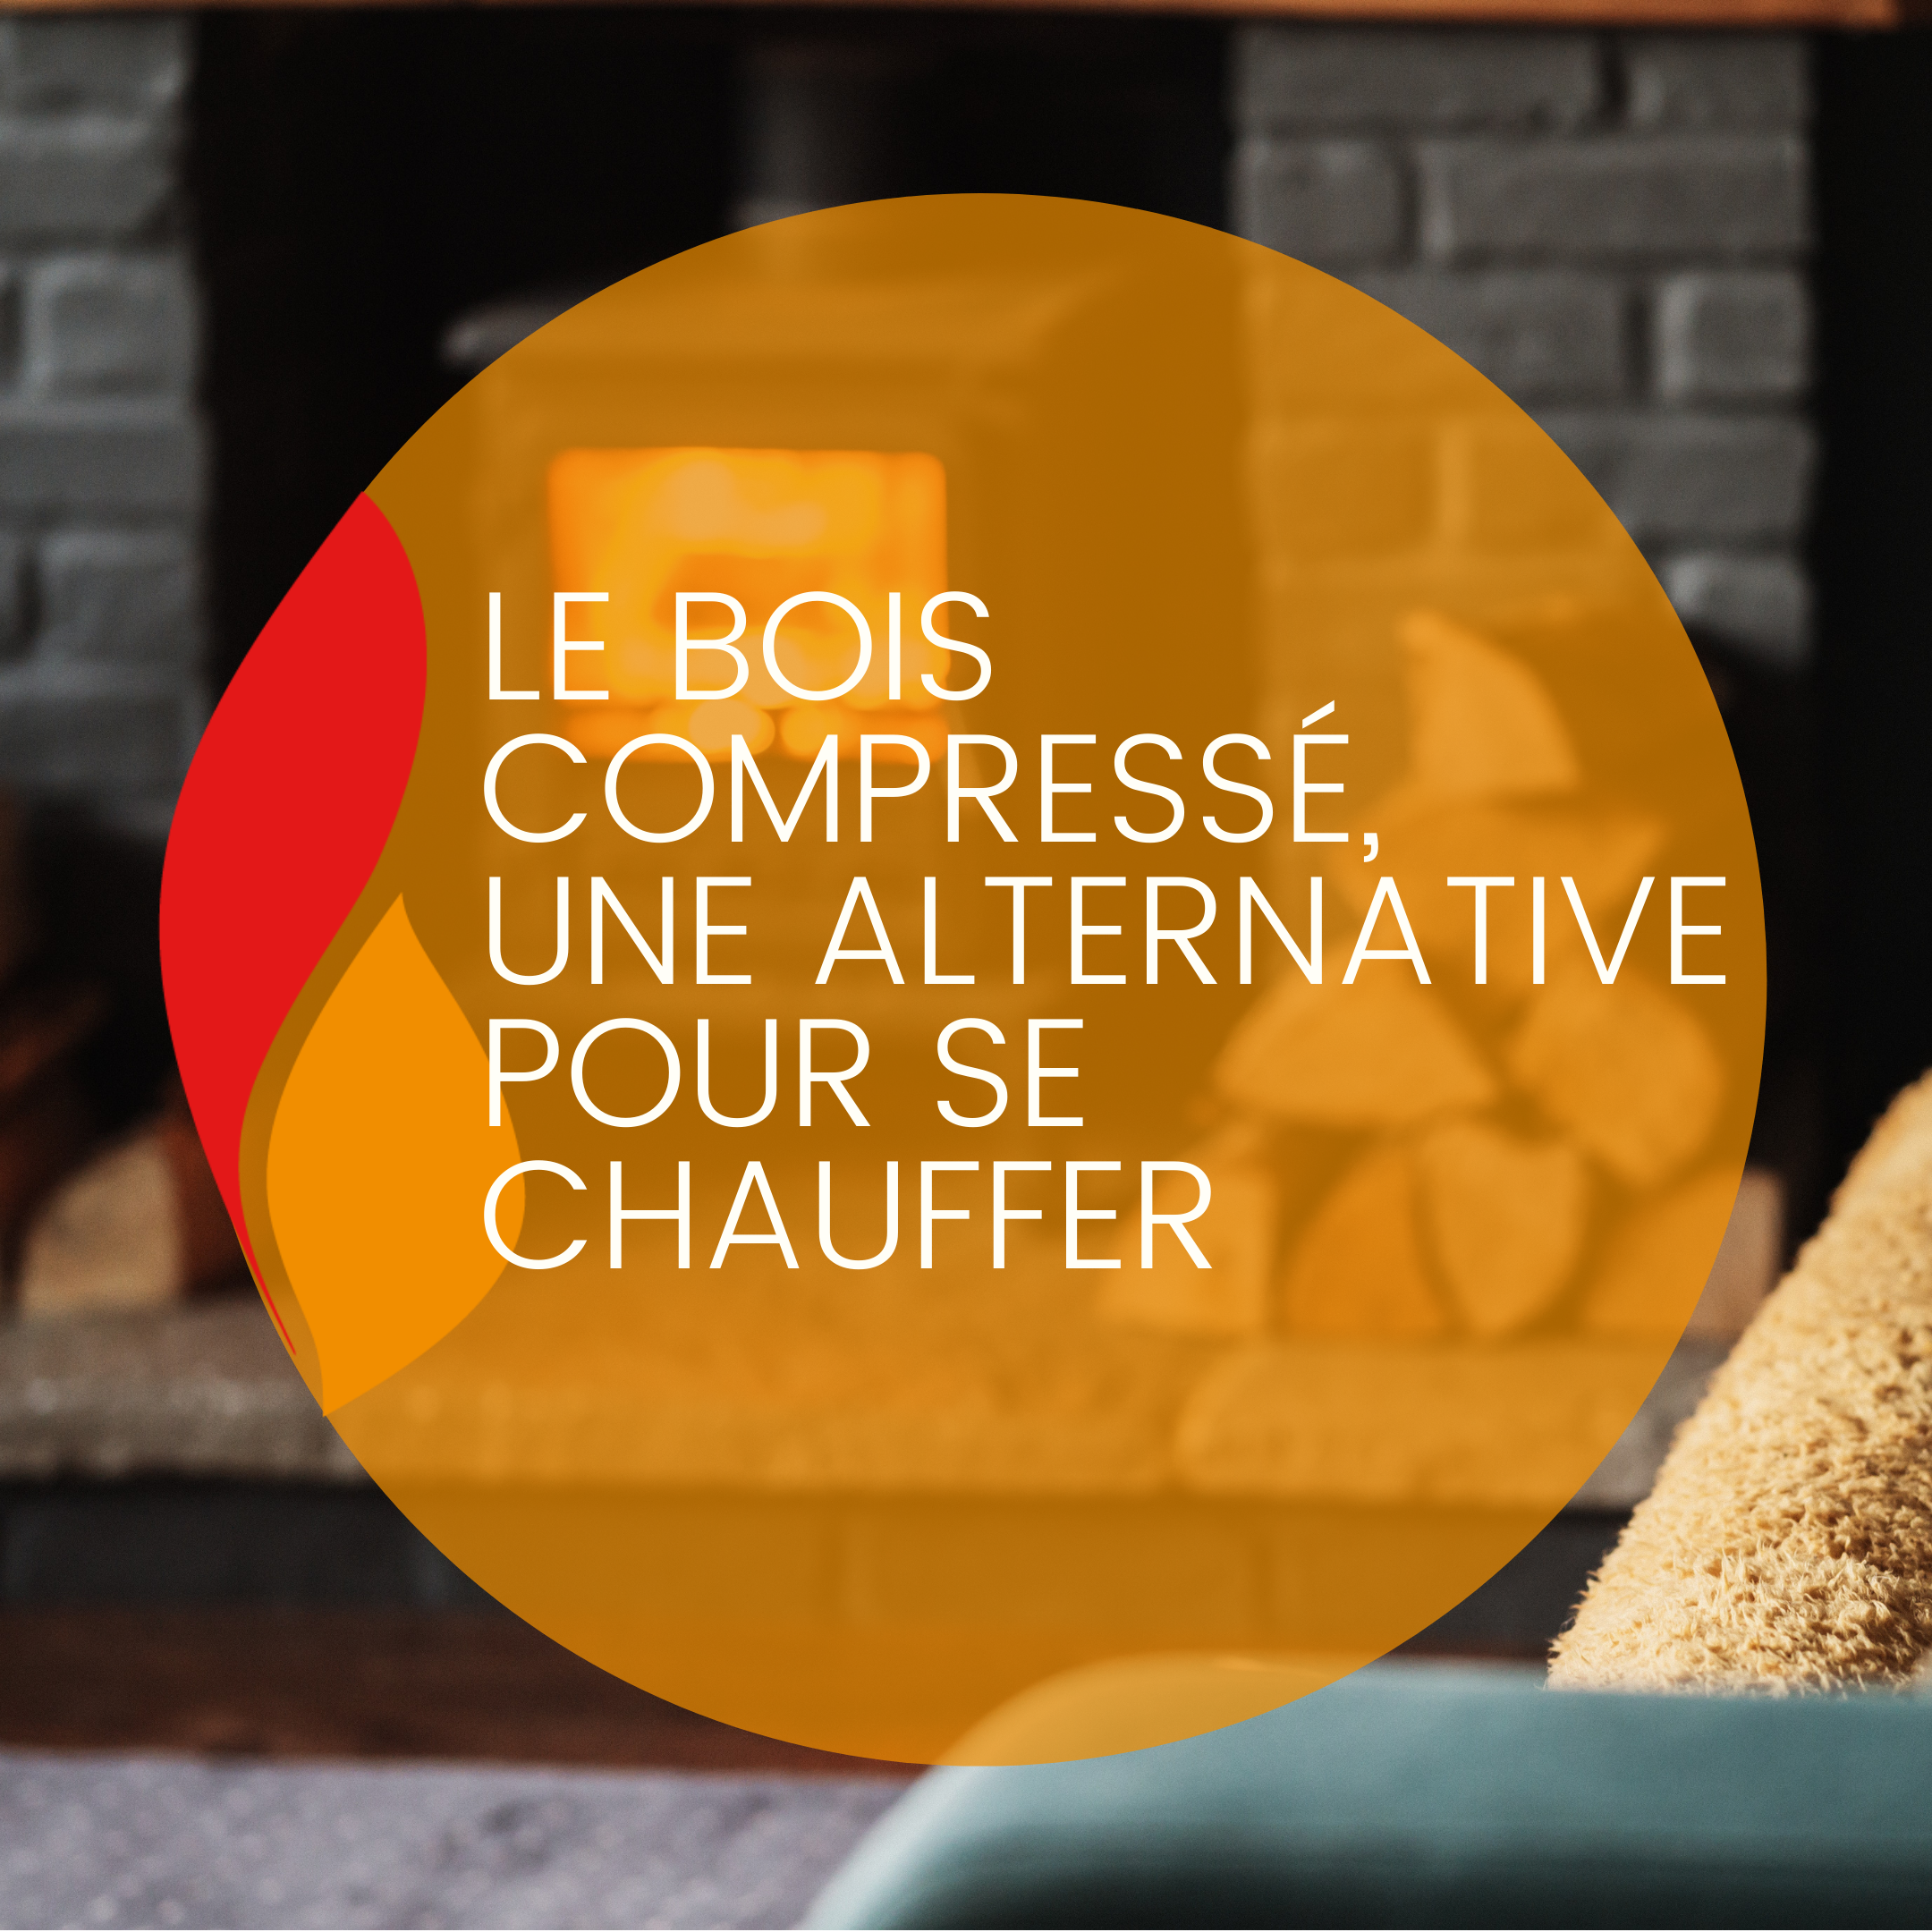 You are currently viewing Le bois compressé, une alternative pour se chauffer !